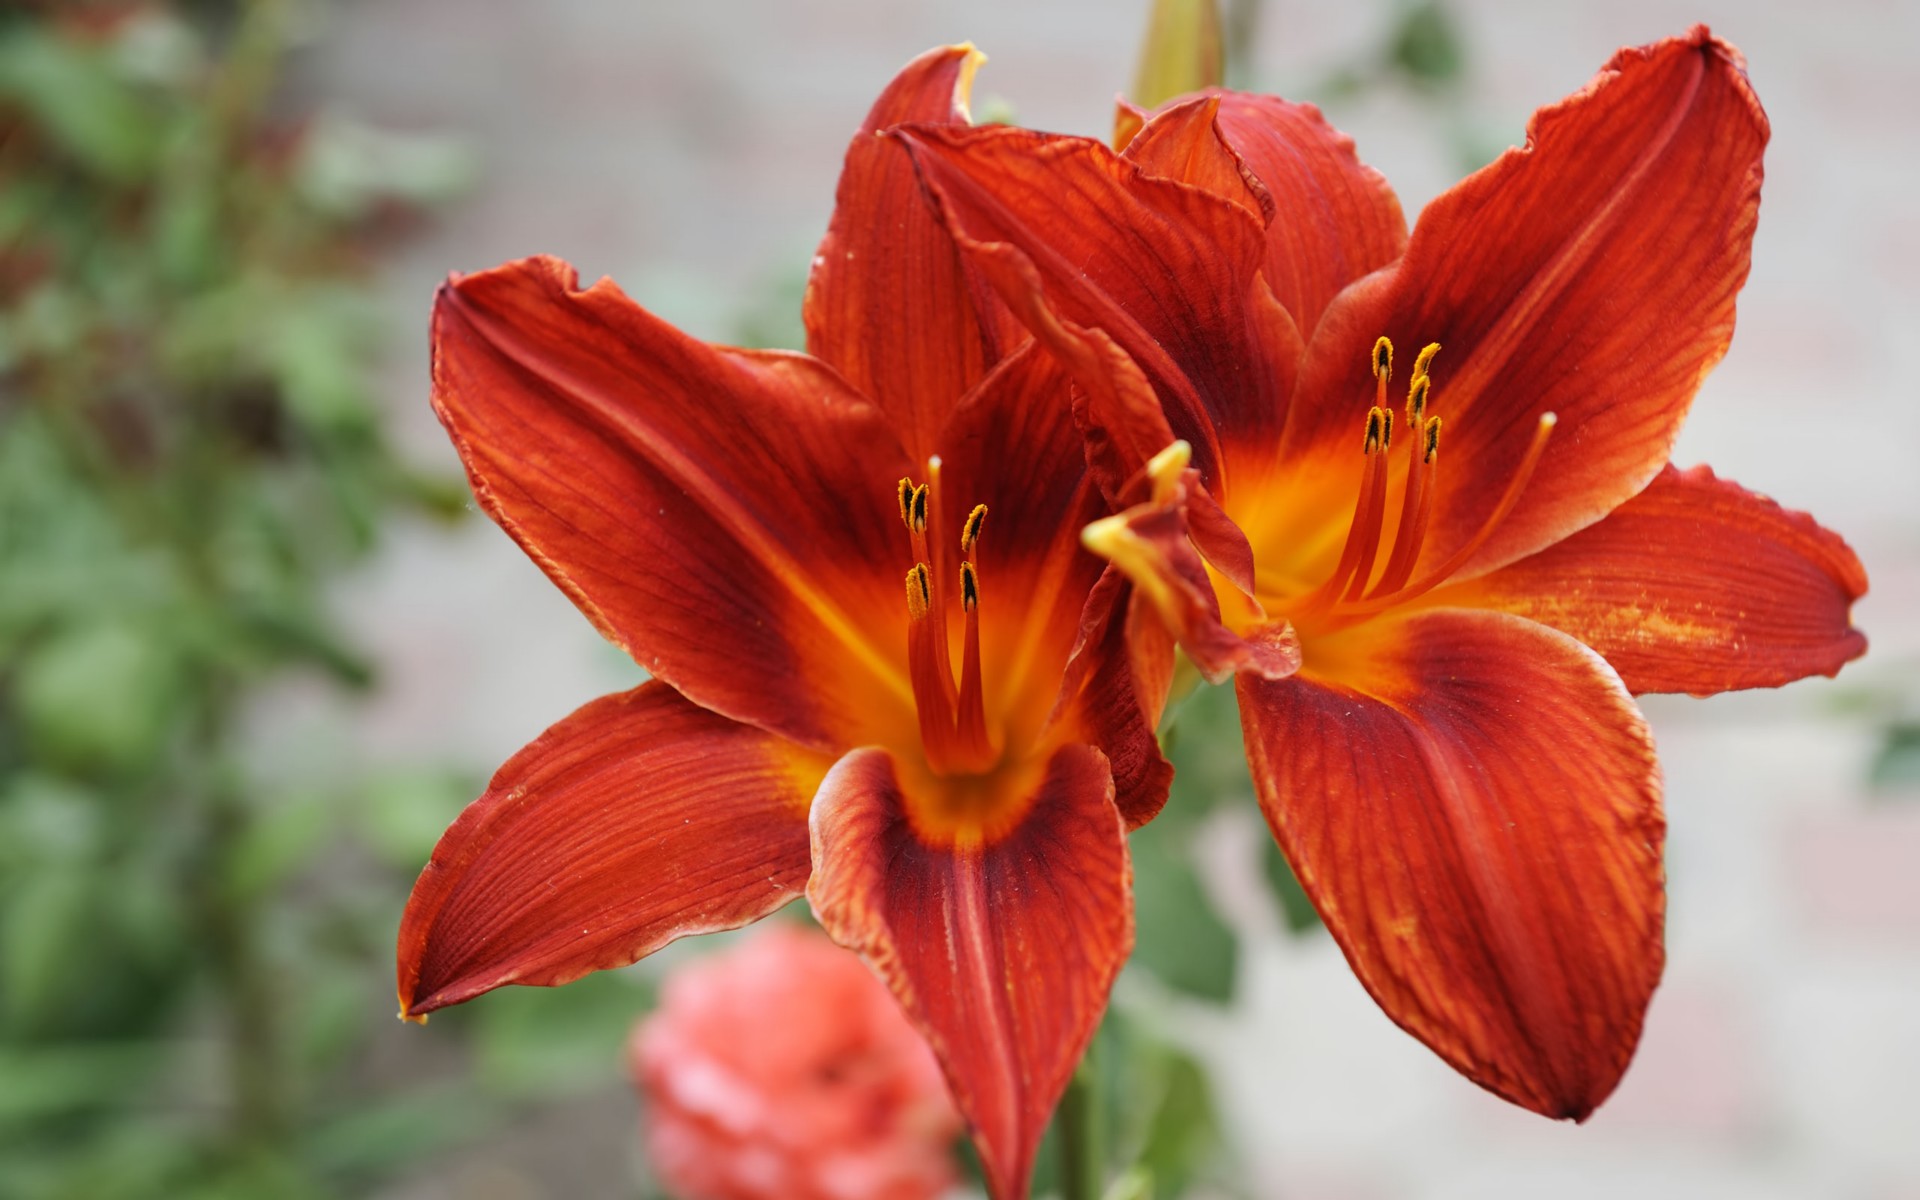 Tuyển tập hình ảnh hoa loa kèn đỏ đẹp nhất - [Kích thước hình ảnh: 1920x1200 px]